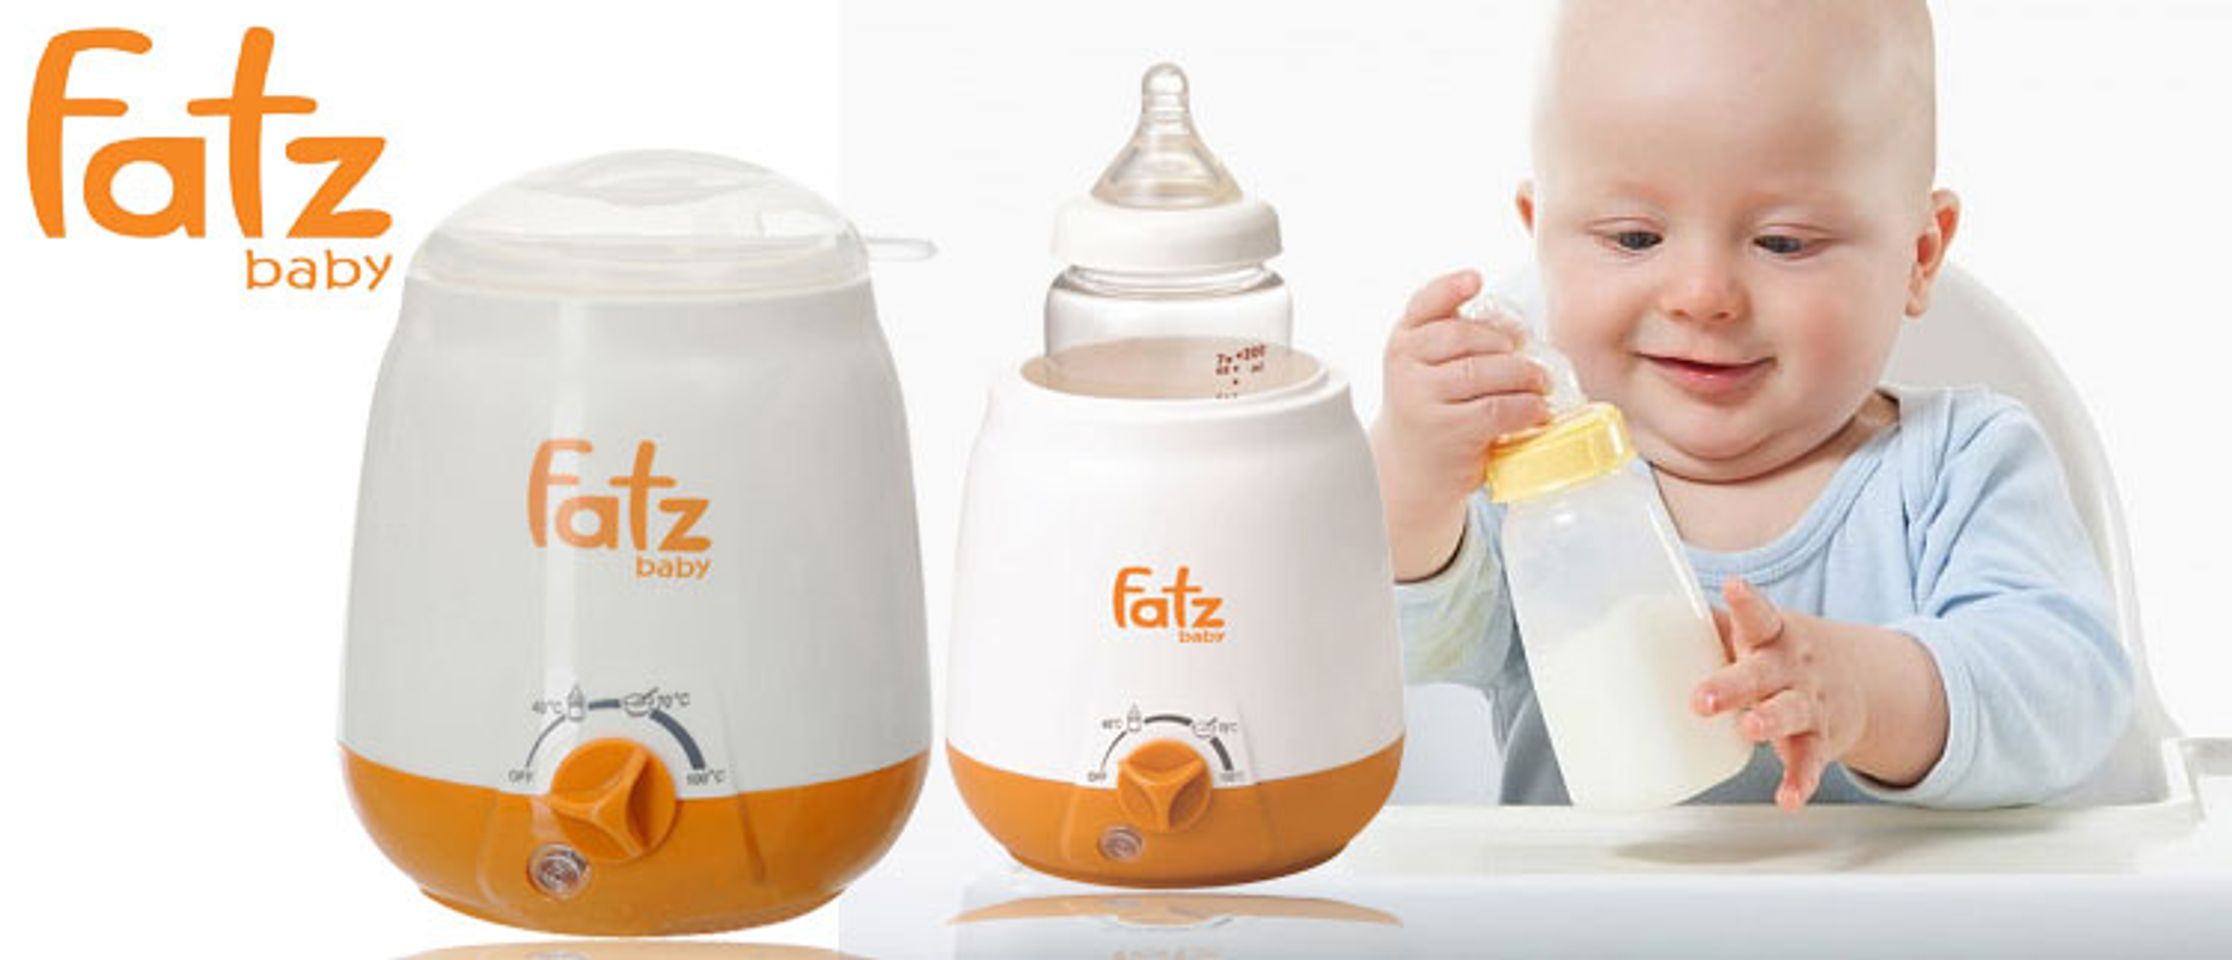 Máy hâm sữa 3 chức năng fatzbaby fb3003sl